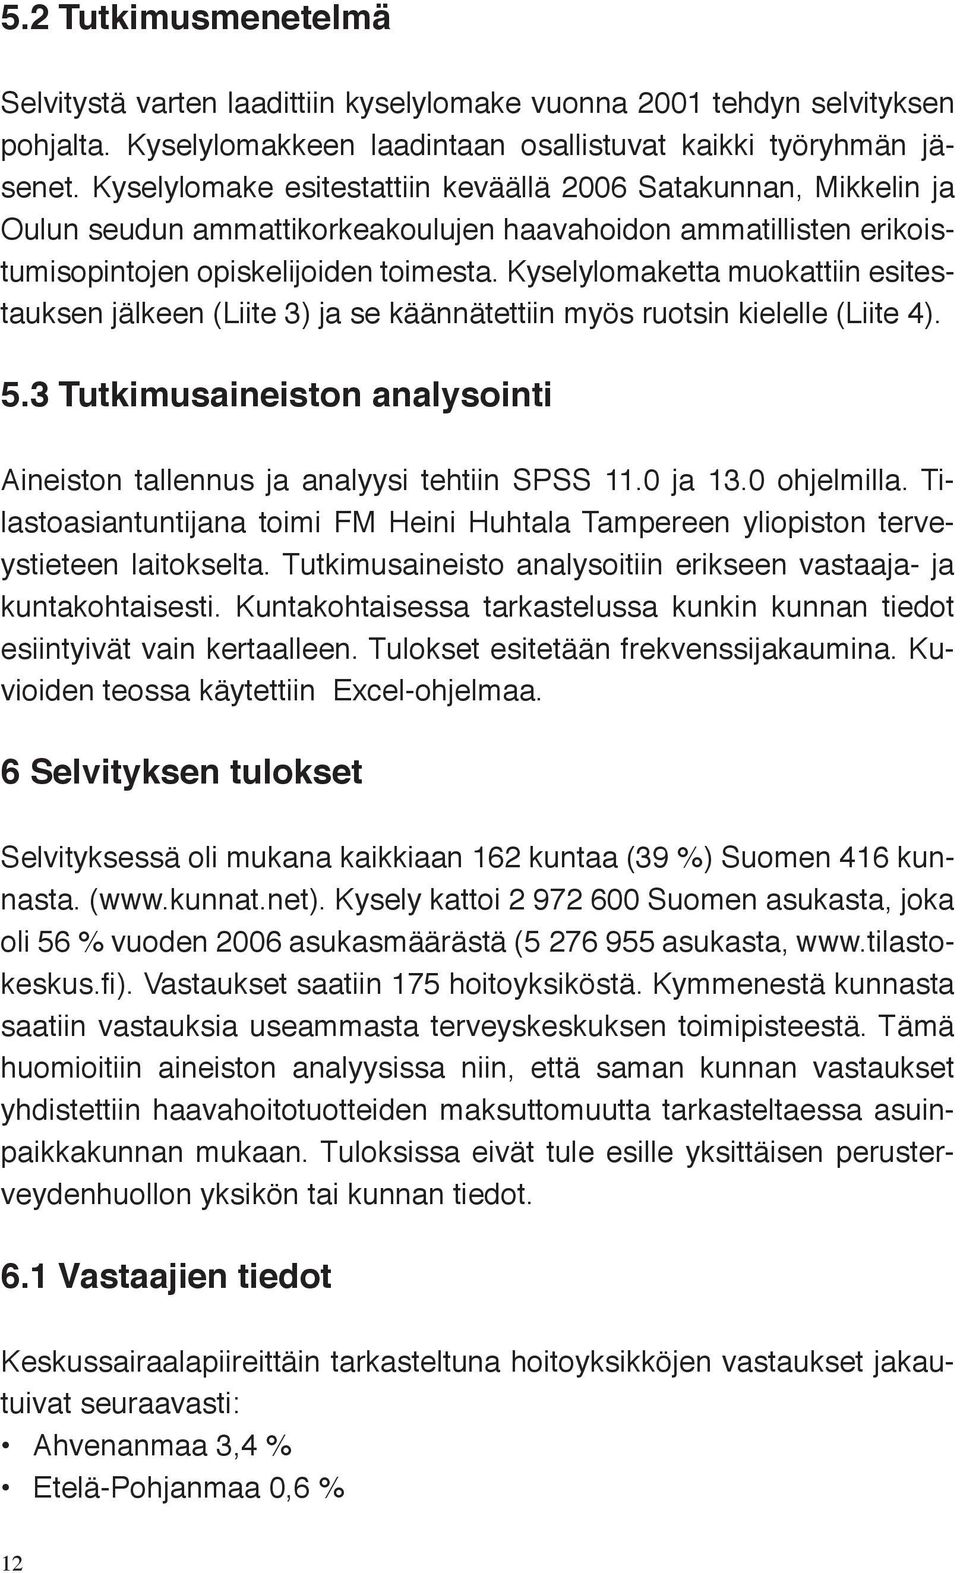 Kyselylomaketta muokattiin esitestauksen jälkeen (Liite 3) ja se käännätettiin myös ruotsin kielelle (Liite 4). 5.3 Tutkimusaineiston analysointi Aineiston tallennus ja analyysi tehtiin SPSS 11.